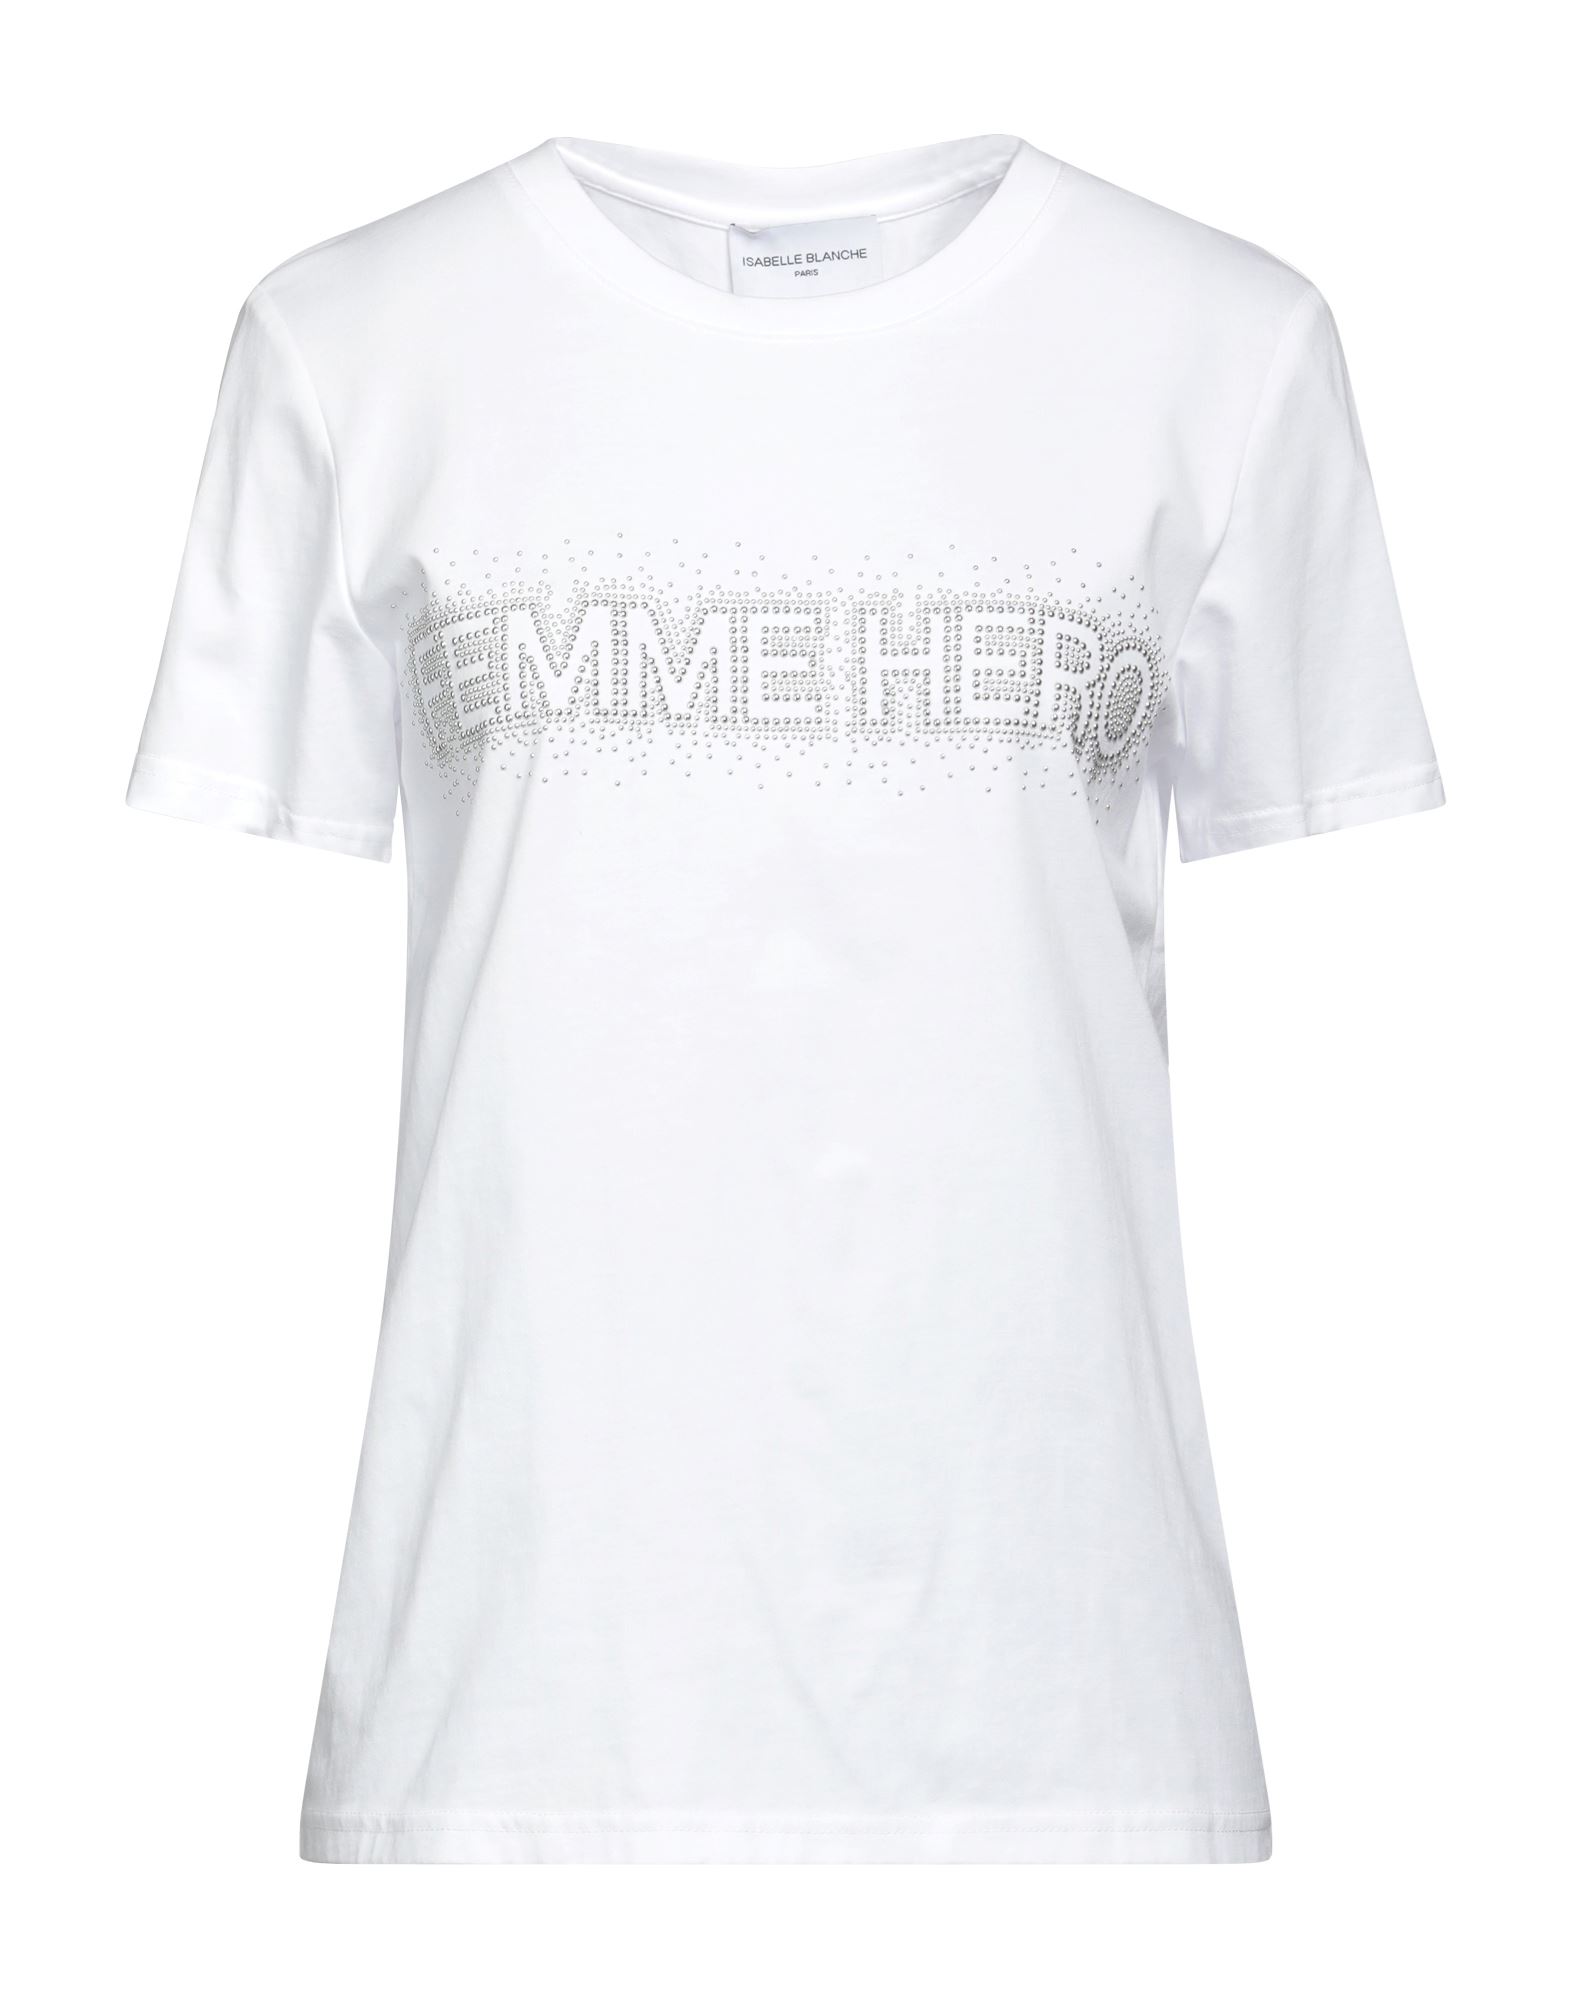 ISABELLE BLANCHE Paris T-shirts Damen Weiß von ISABELLE BLANCHE Paris